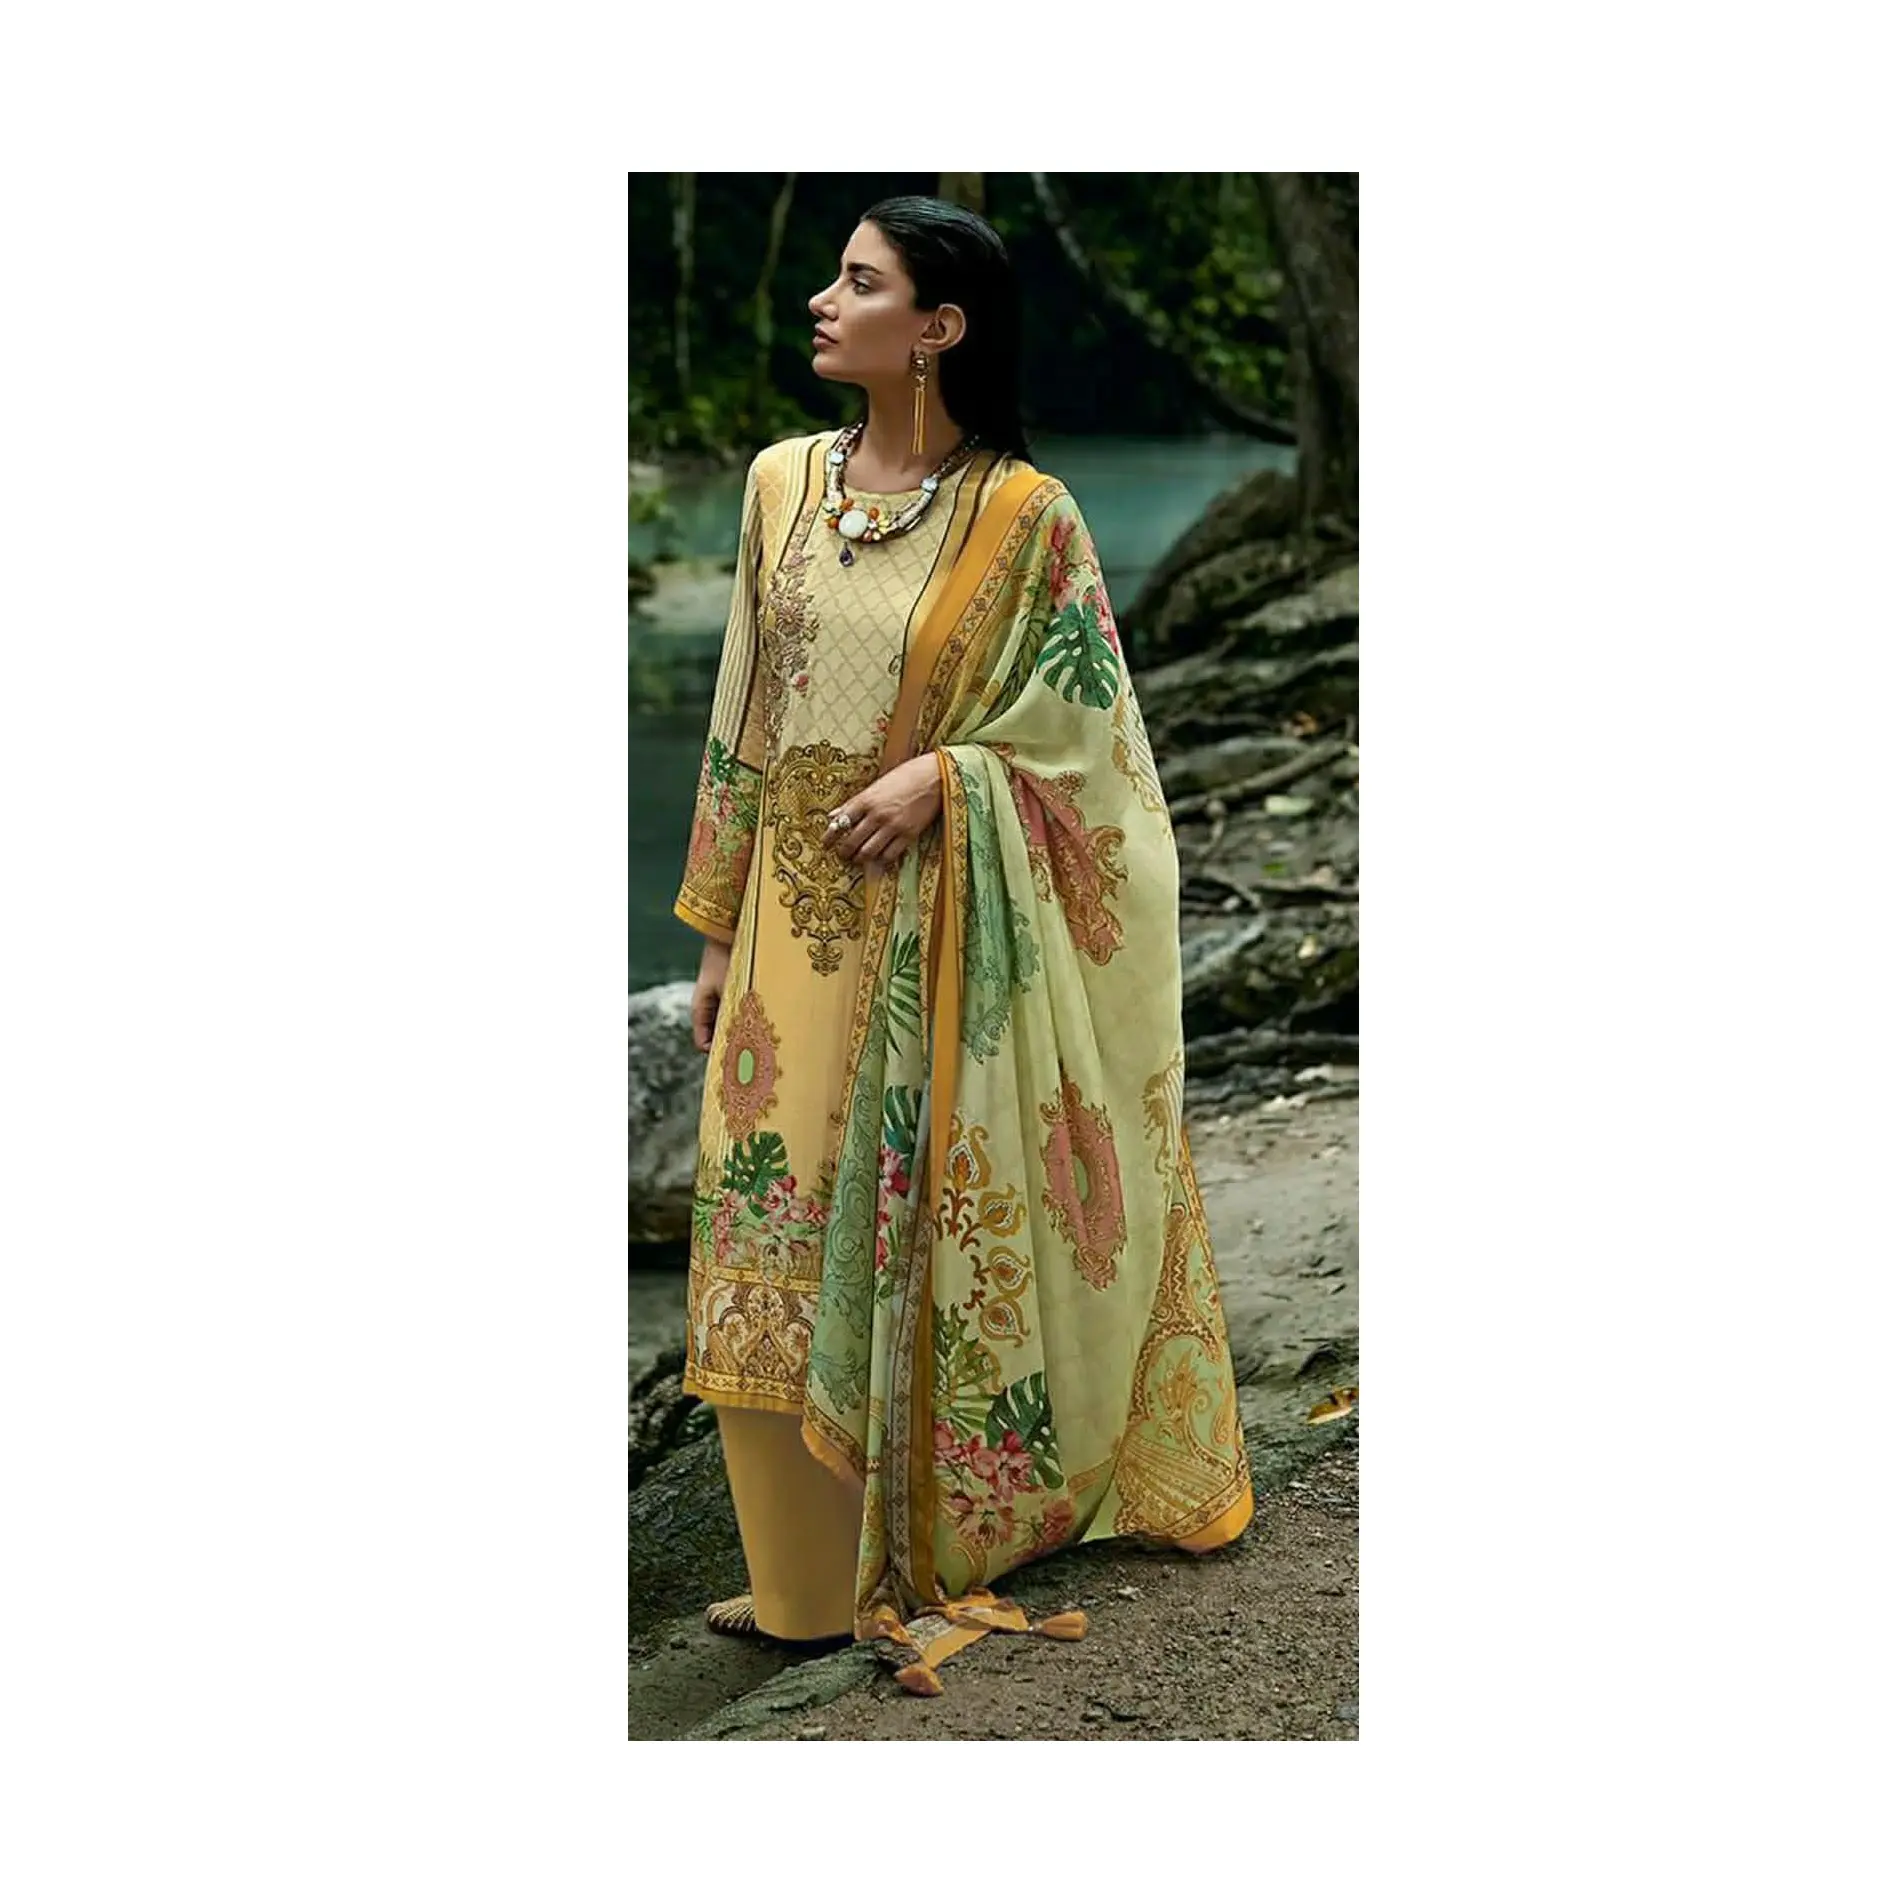 Vestito da prati Pakistani di design stampato in cotone ad alta richiesta per occasioni di matrimonio e ricevimento a prezzo all'ingrosso